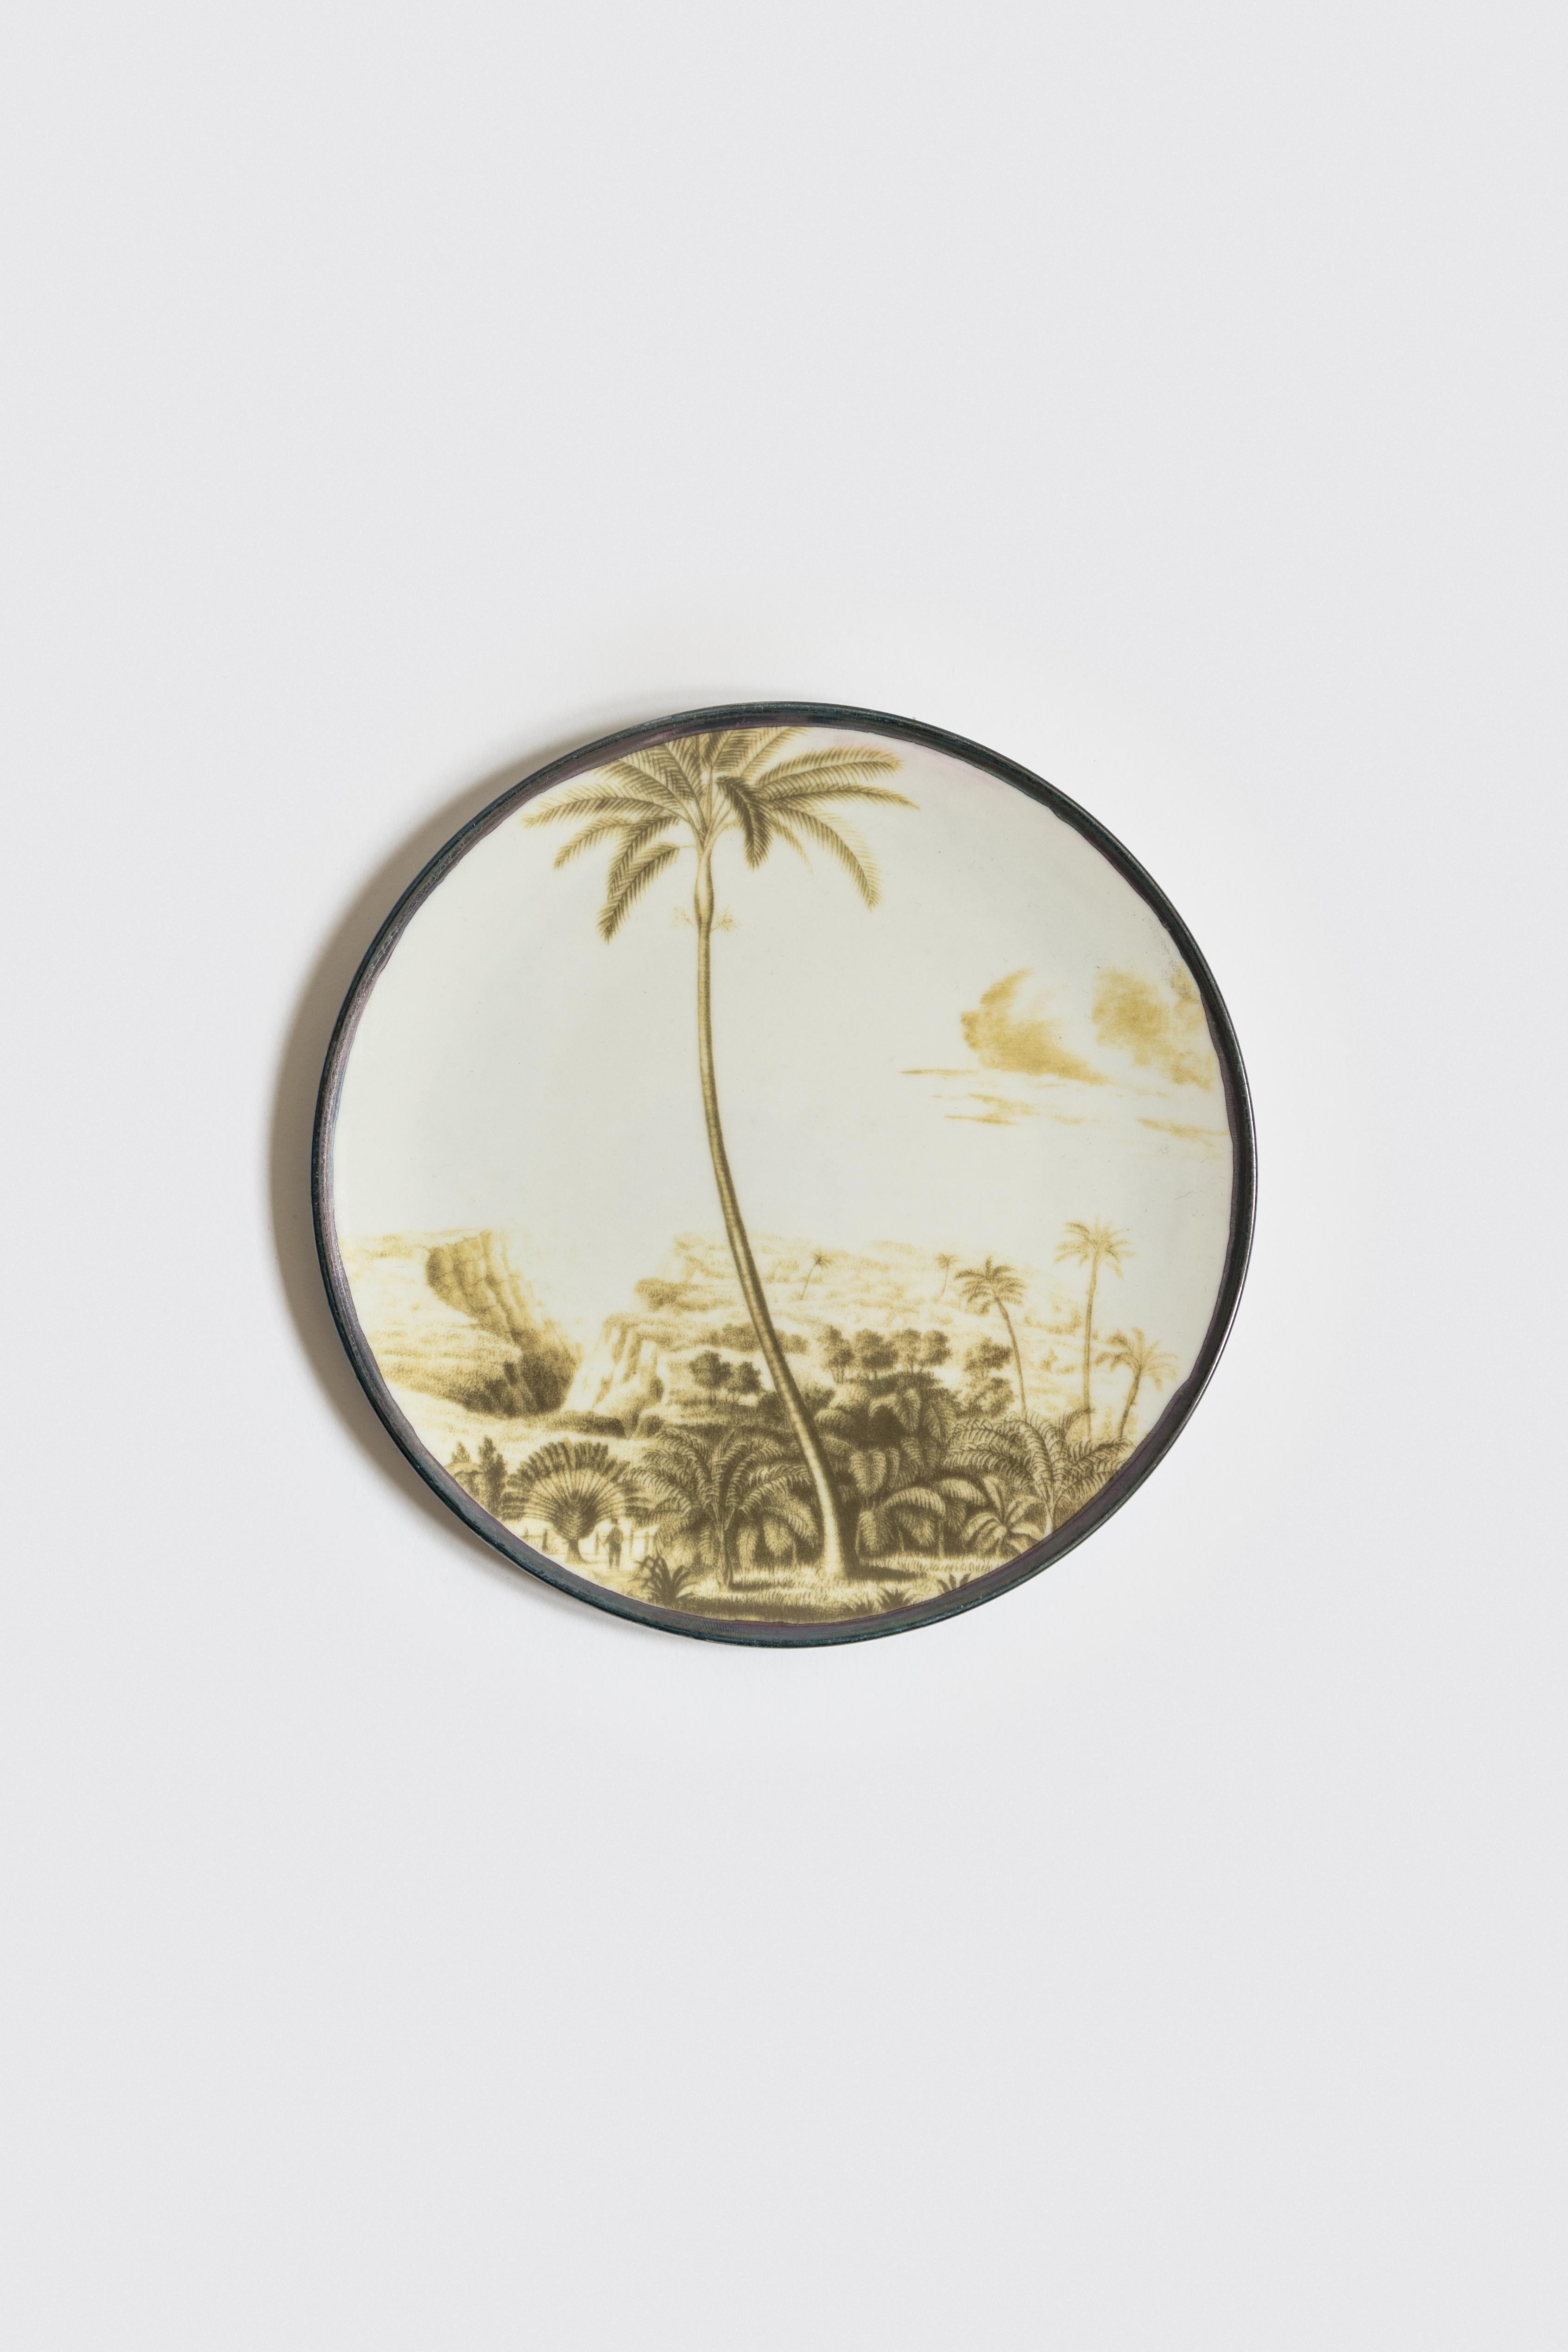 Las Palmas, Six Contemporary Porcelain Dessert Plates with Decorative Design For Sale 1